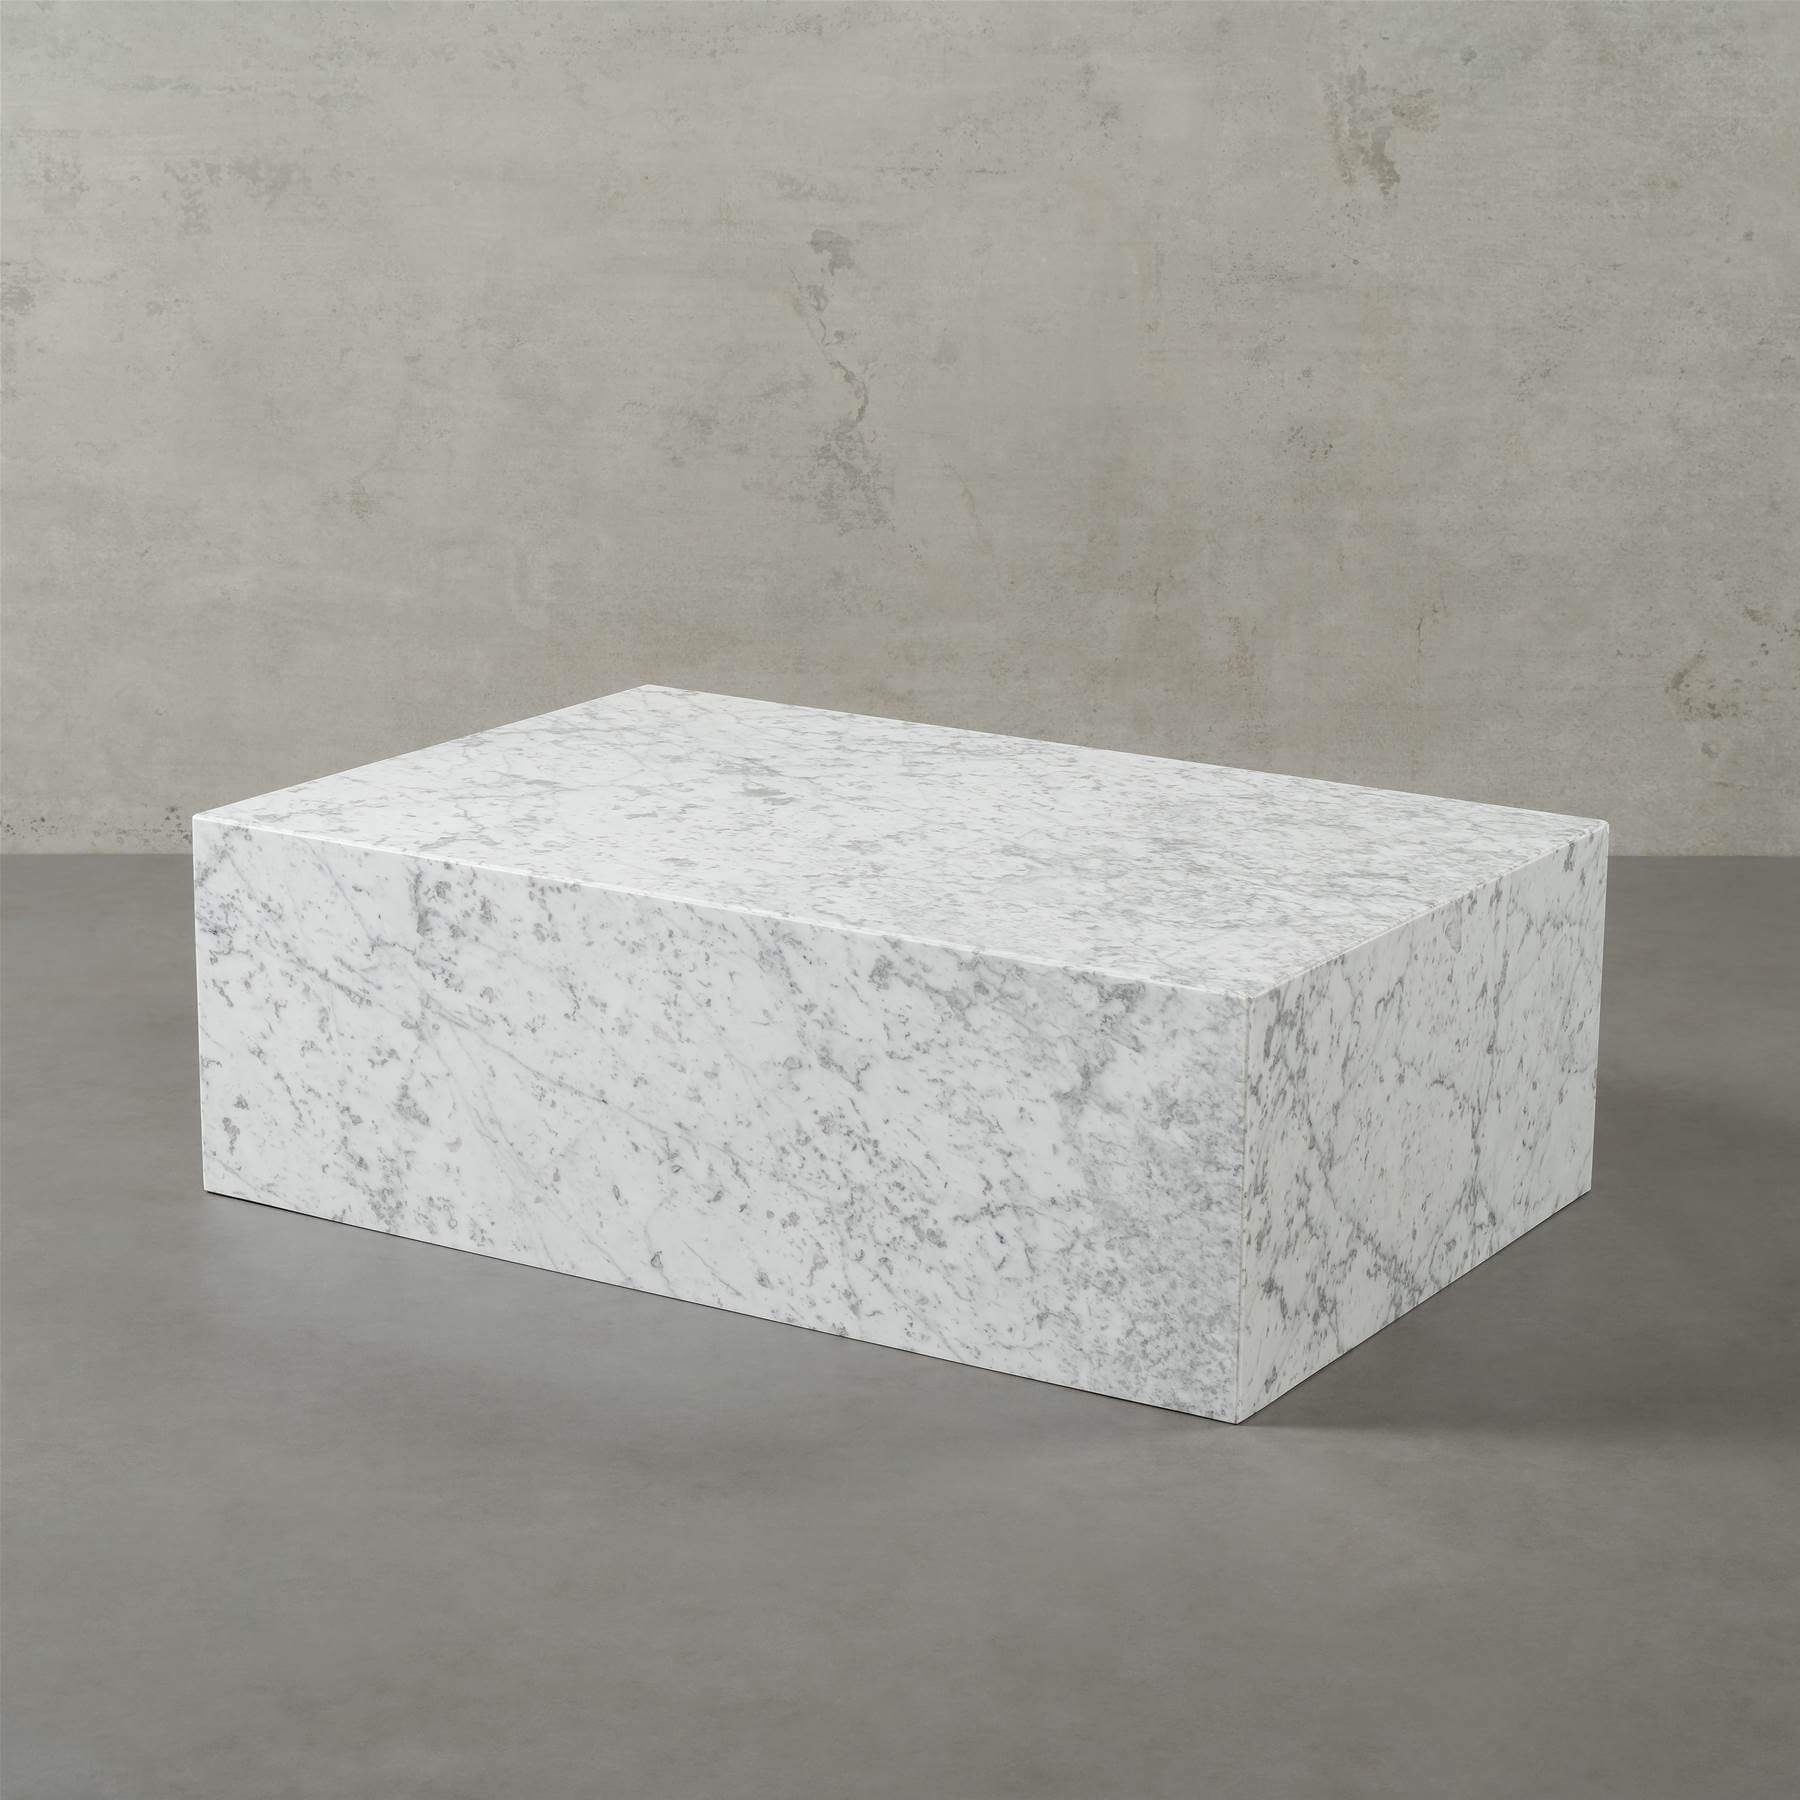 MAGNA Atelier Couchtisch ASPEN mit ECHTEM MARMOR, Wohnzimmer Tisch eckig, Naturstein, 90x60x30cm Bianco Carrara